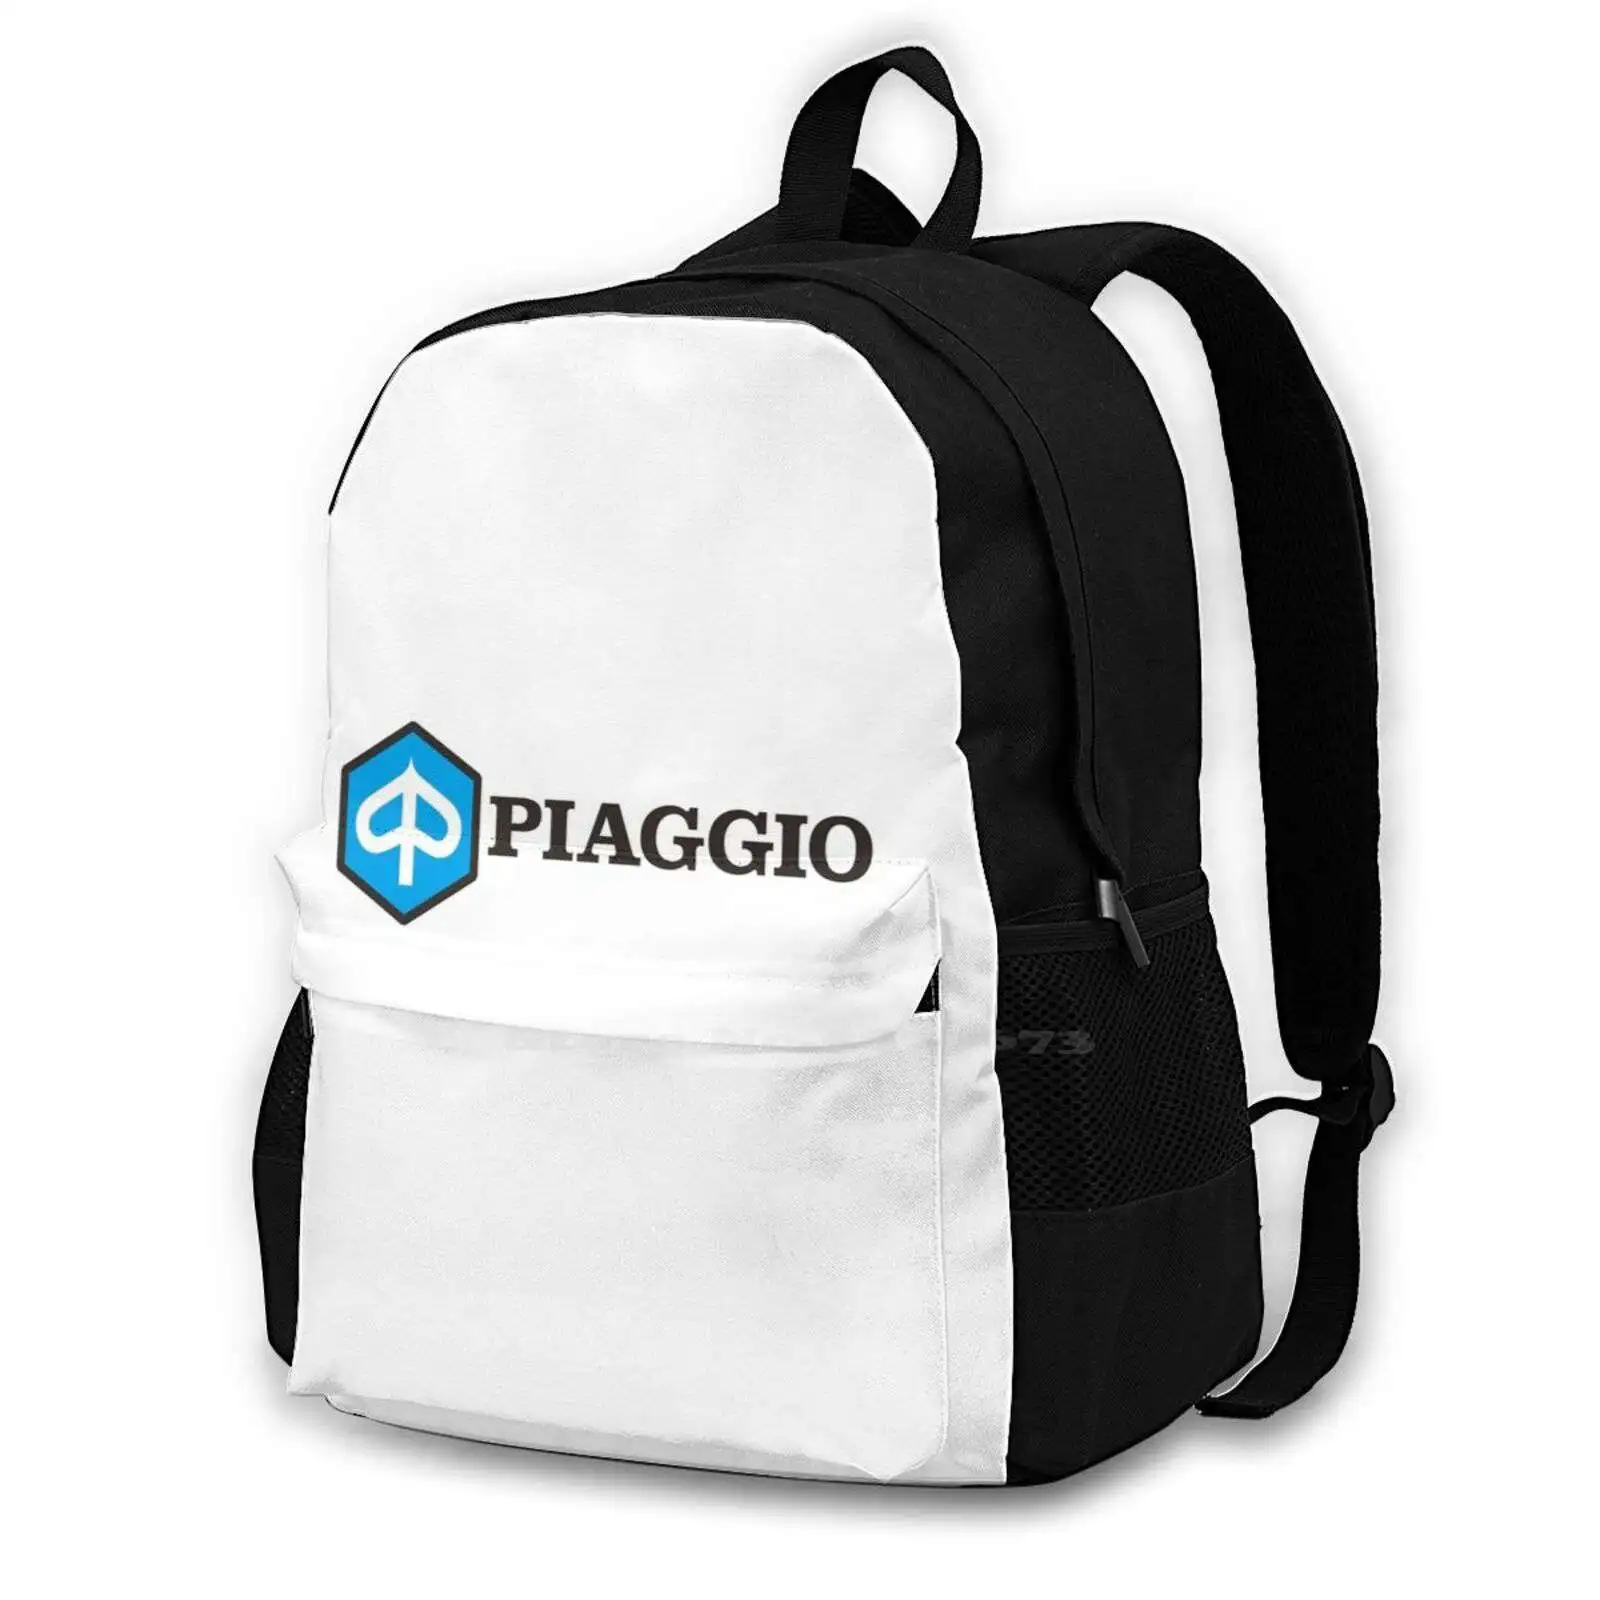 

Best Sale Piaggio Logo Backpack For Student School Laptop Travel Bag Piaggio Vespa Motobike Classic Classic Piaggio Piaggio